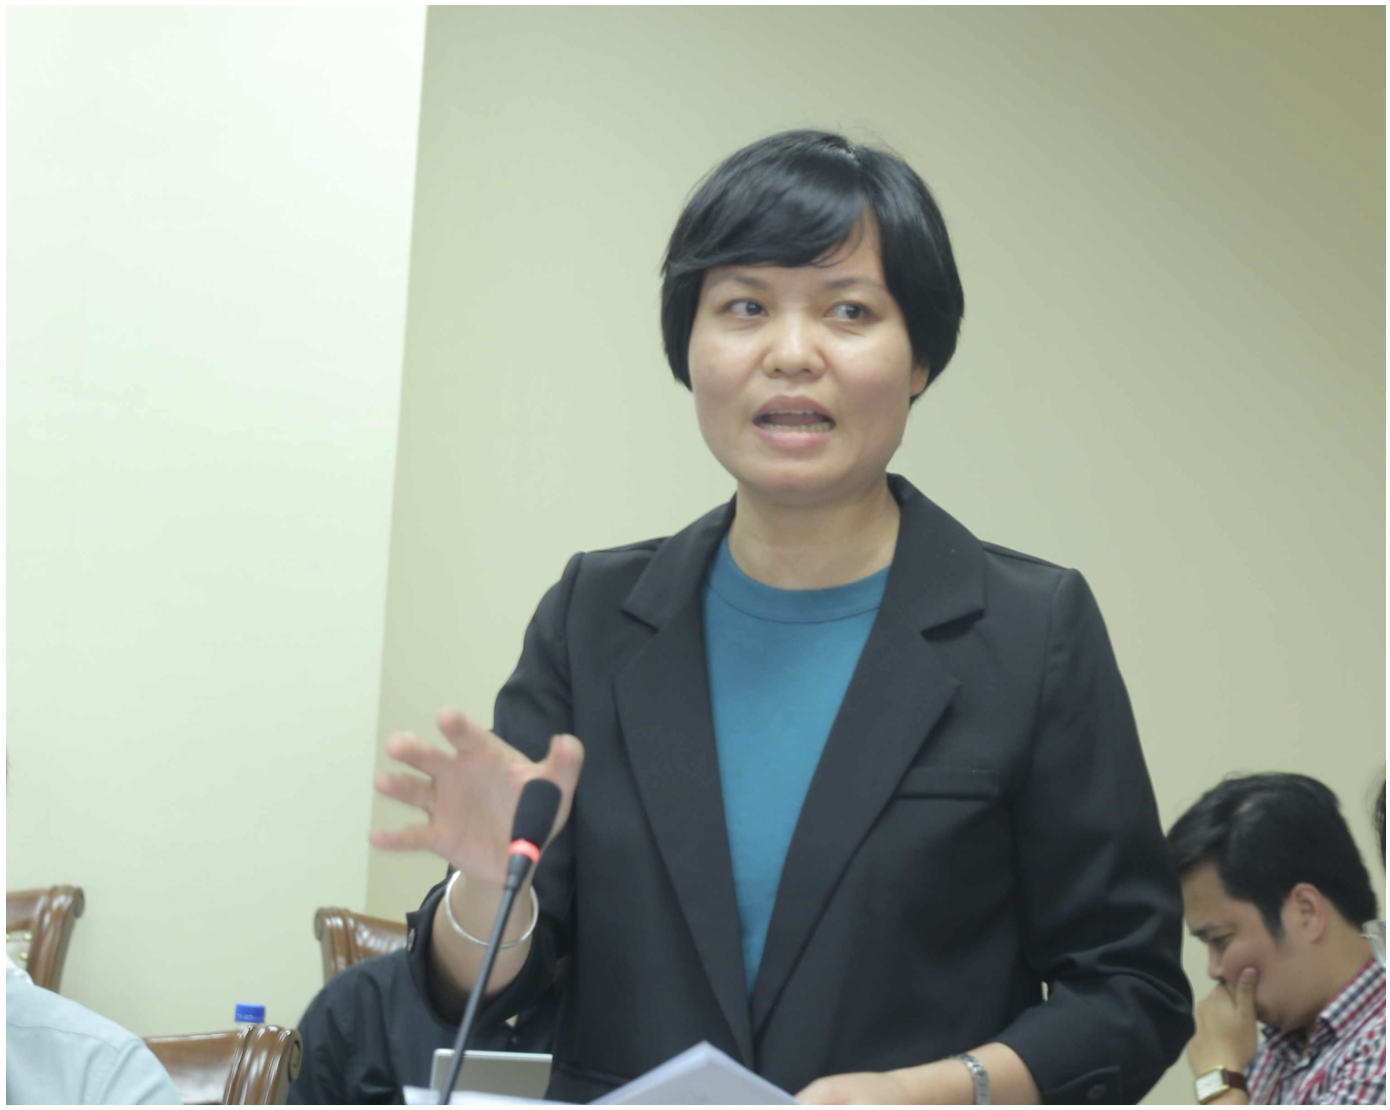 TS. Nguyễn Thị Thu Trang, Giám đốc Trung tâm WTO và Hội nhập thuộc Phòng Thương mại và Công nghiệp Việt Nam (VCCI) đưa ra nhiều góp ý tâm huyết cho dự thảo Luật GDĐT (sửa đổi)